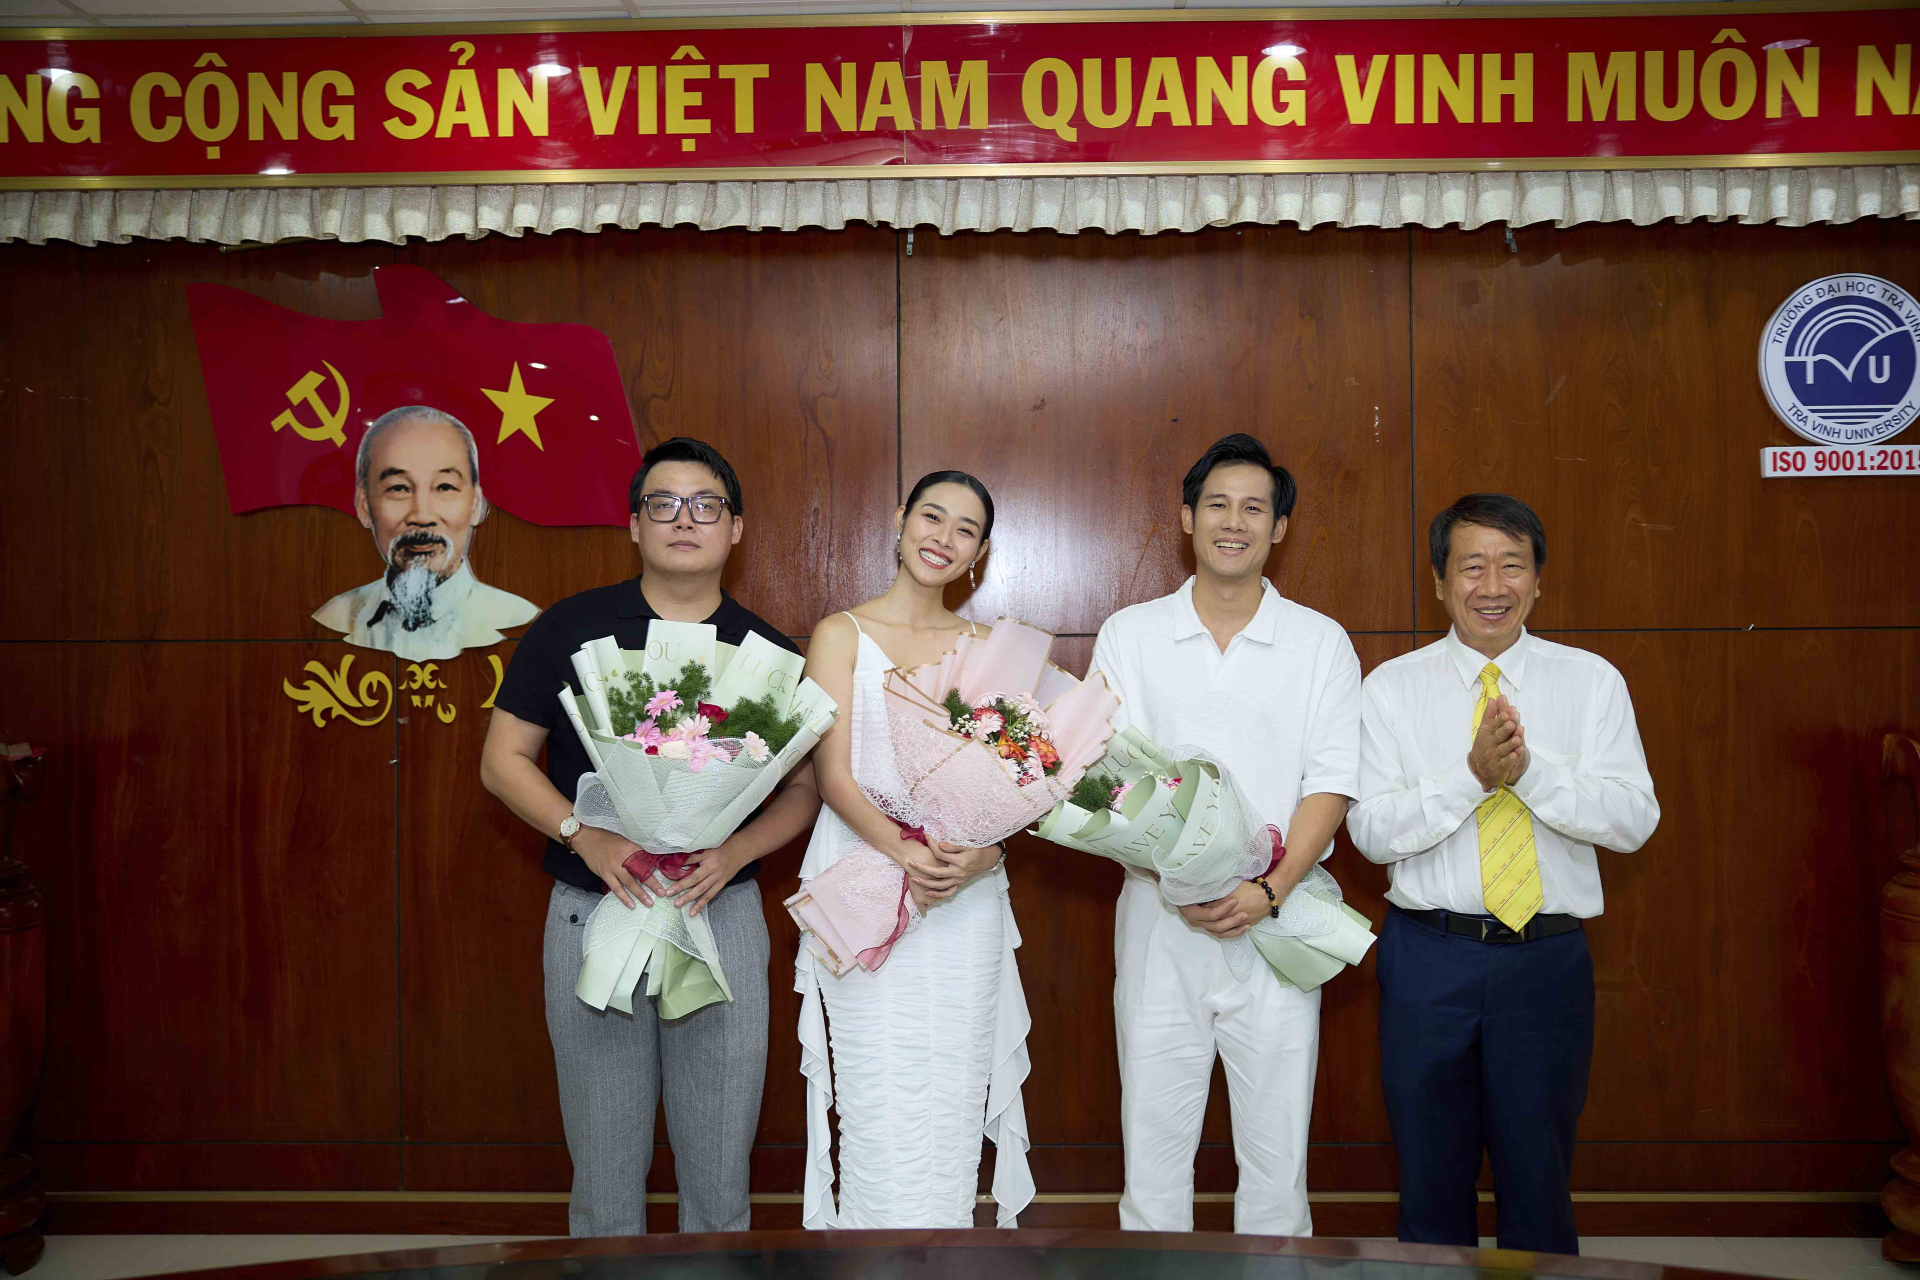 Diệp Bảo Ngọc, Thanh Thức, Huỳnh Thi được Ban lãnh đạo trường Đại học Trà Vinh tặng hoa